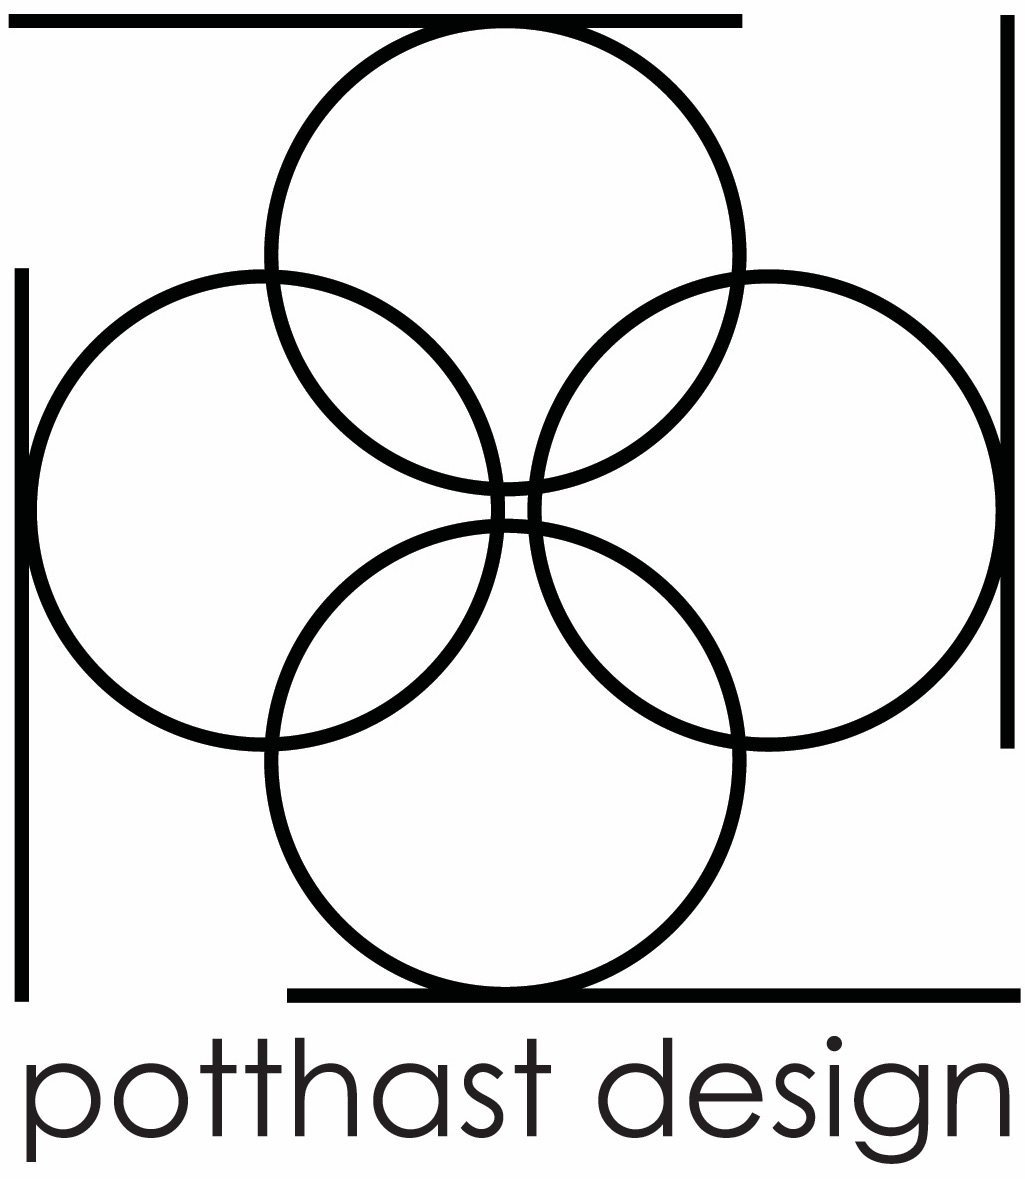 Potthast Design